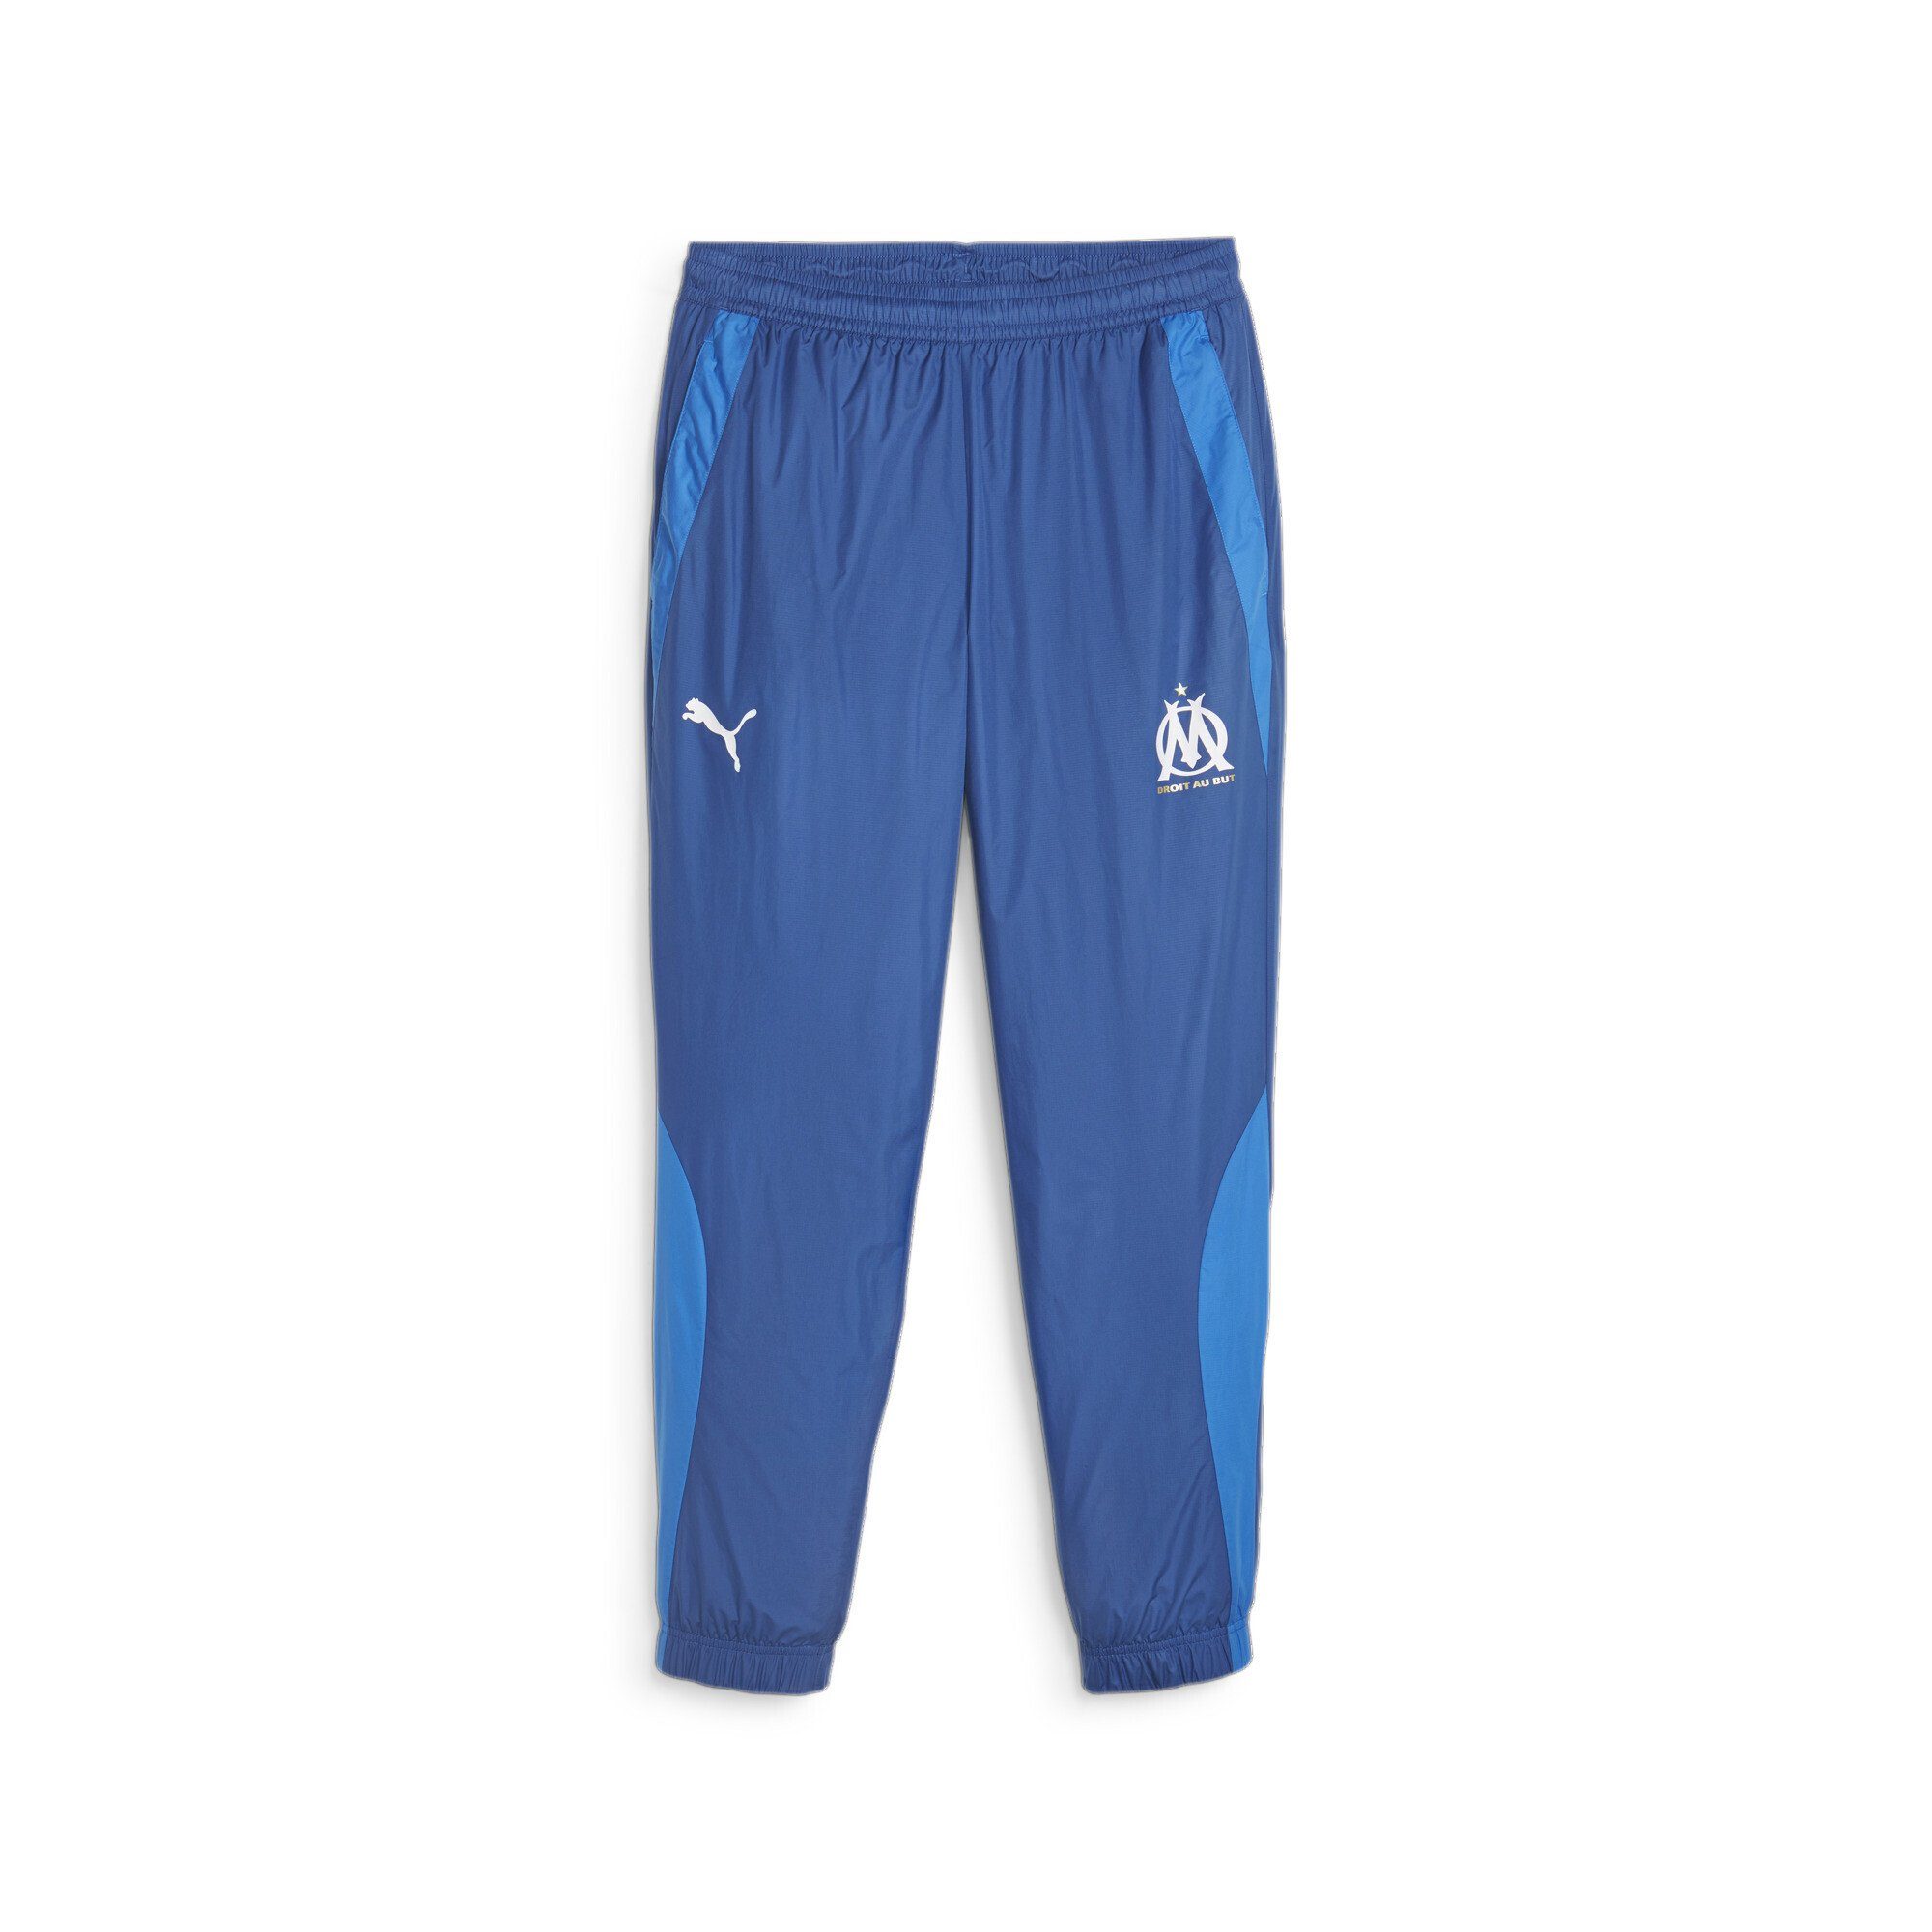 PUMA Sporthose Prematch de Clyde Team Royal Marseille Olympique Herren Fußballhose Blue